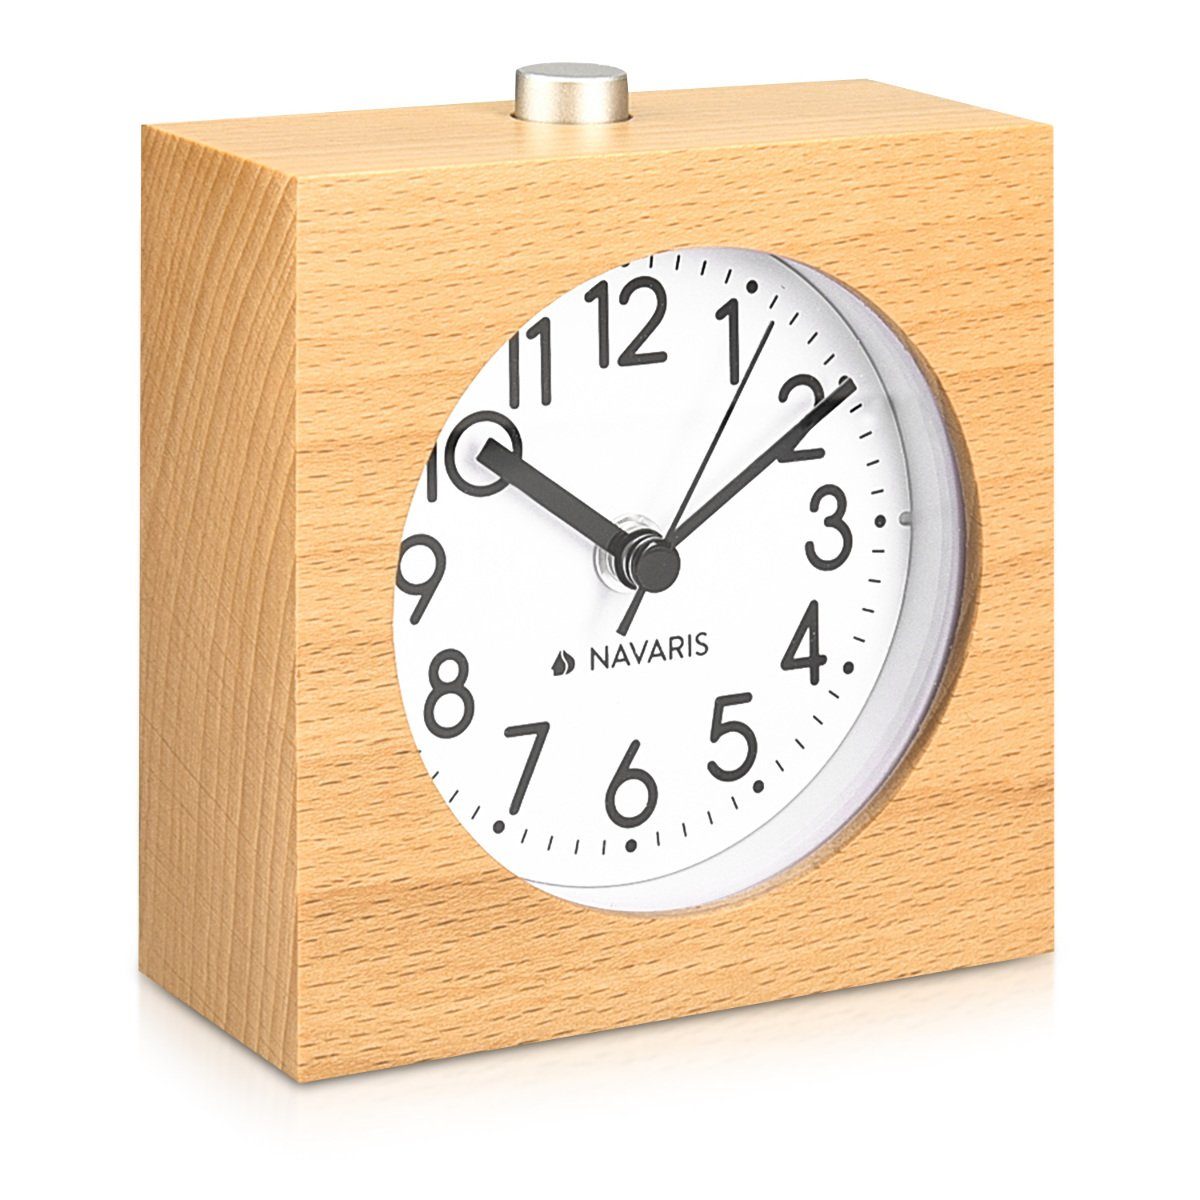 Analog Holz Uhr Wecker mit Snooze Ziffernblatt Alarm Licht Naturholz Dunkelbraun 